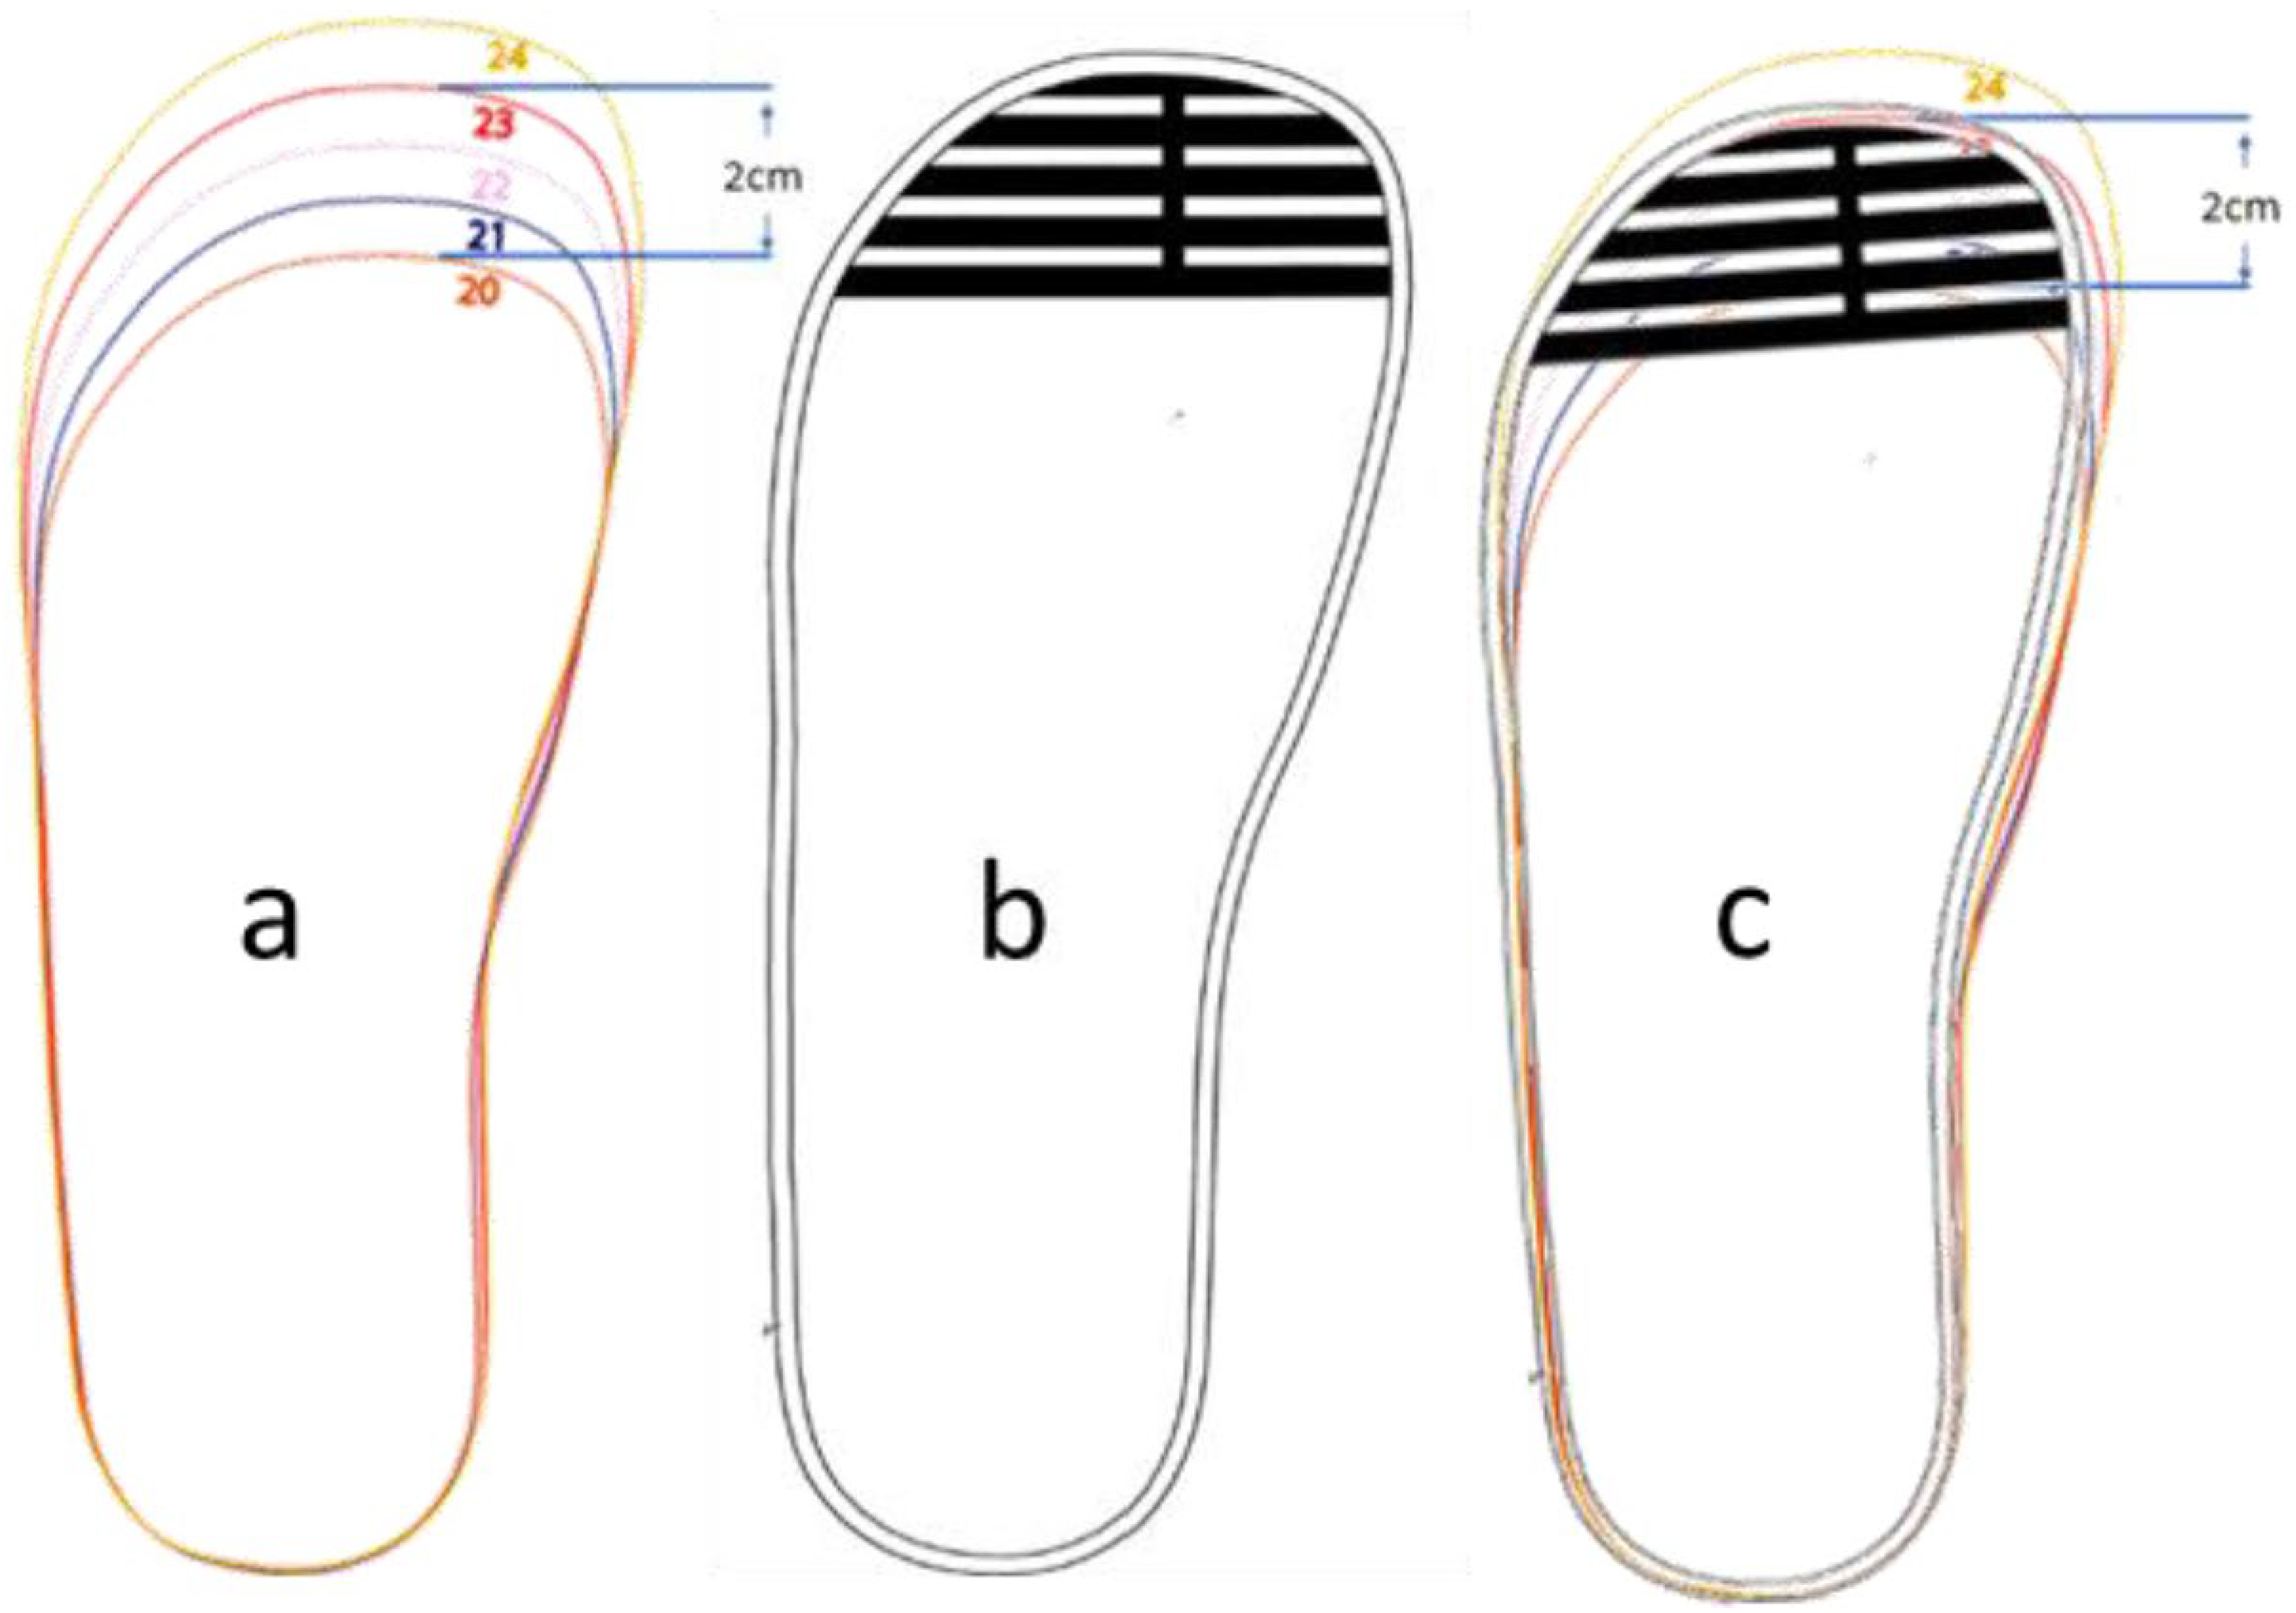 Sensors | Free Full-Text | Comprehensive Understanding of Foot ...